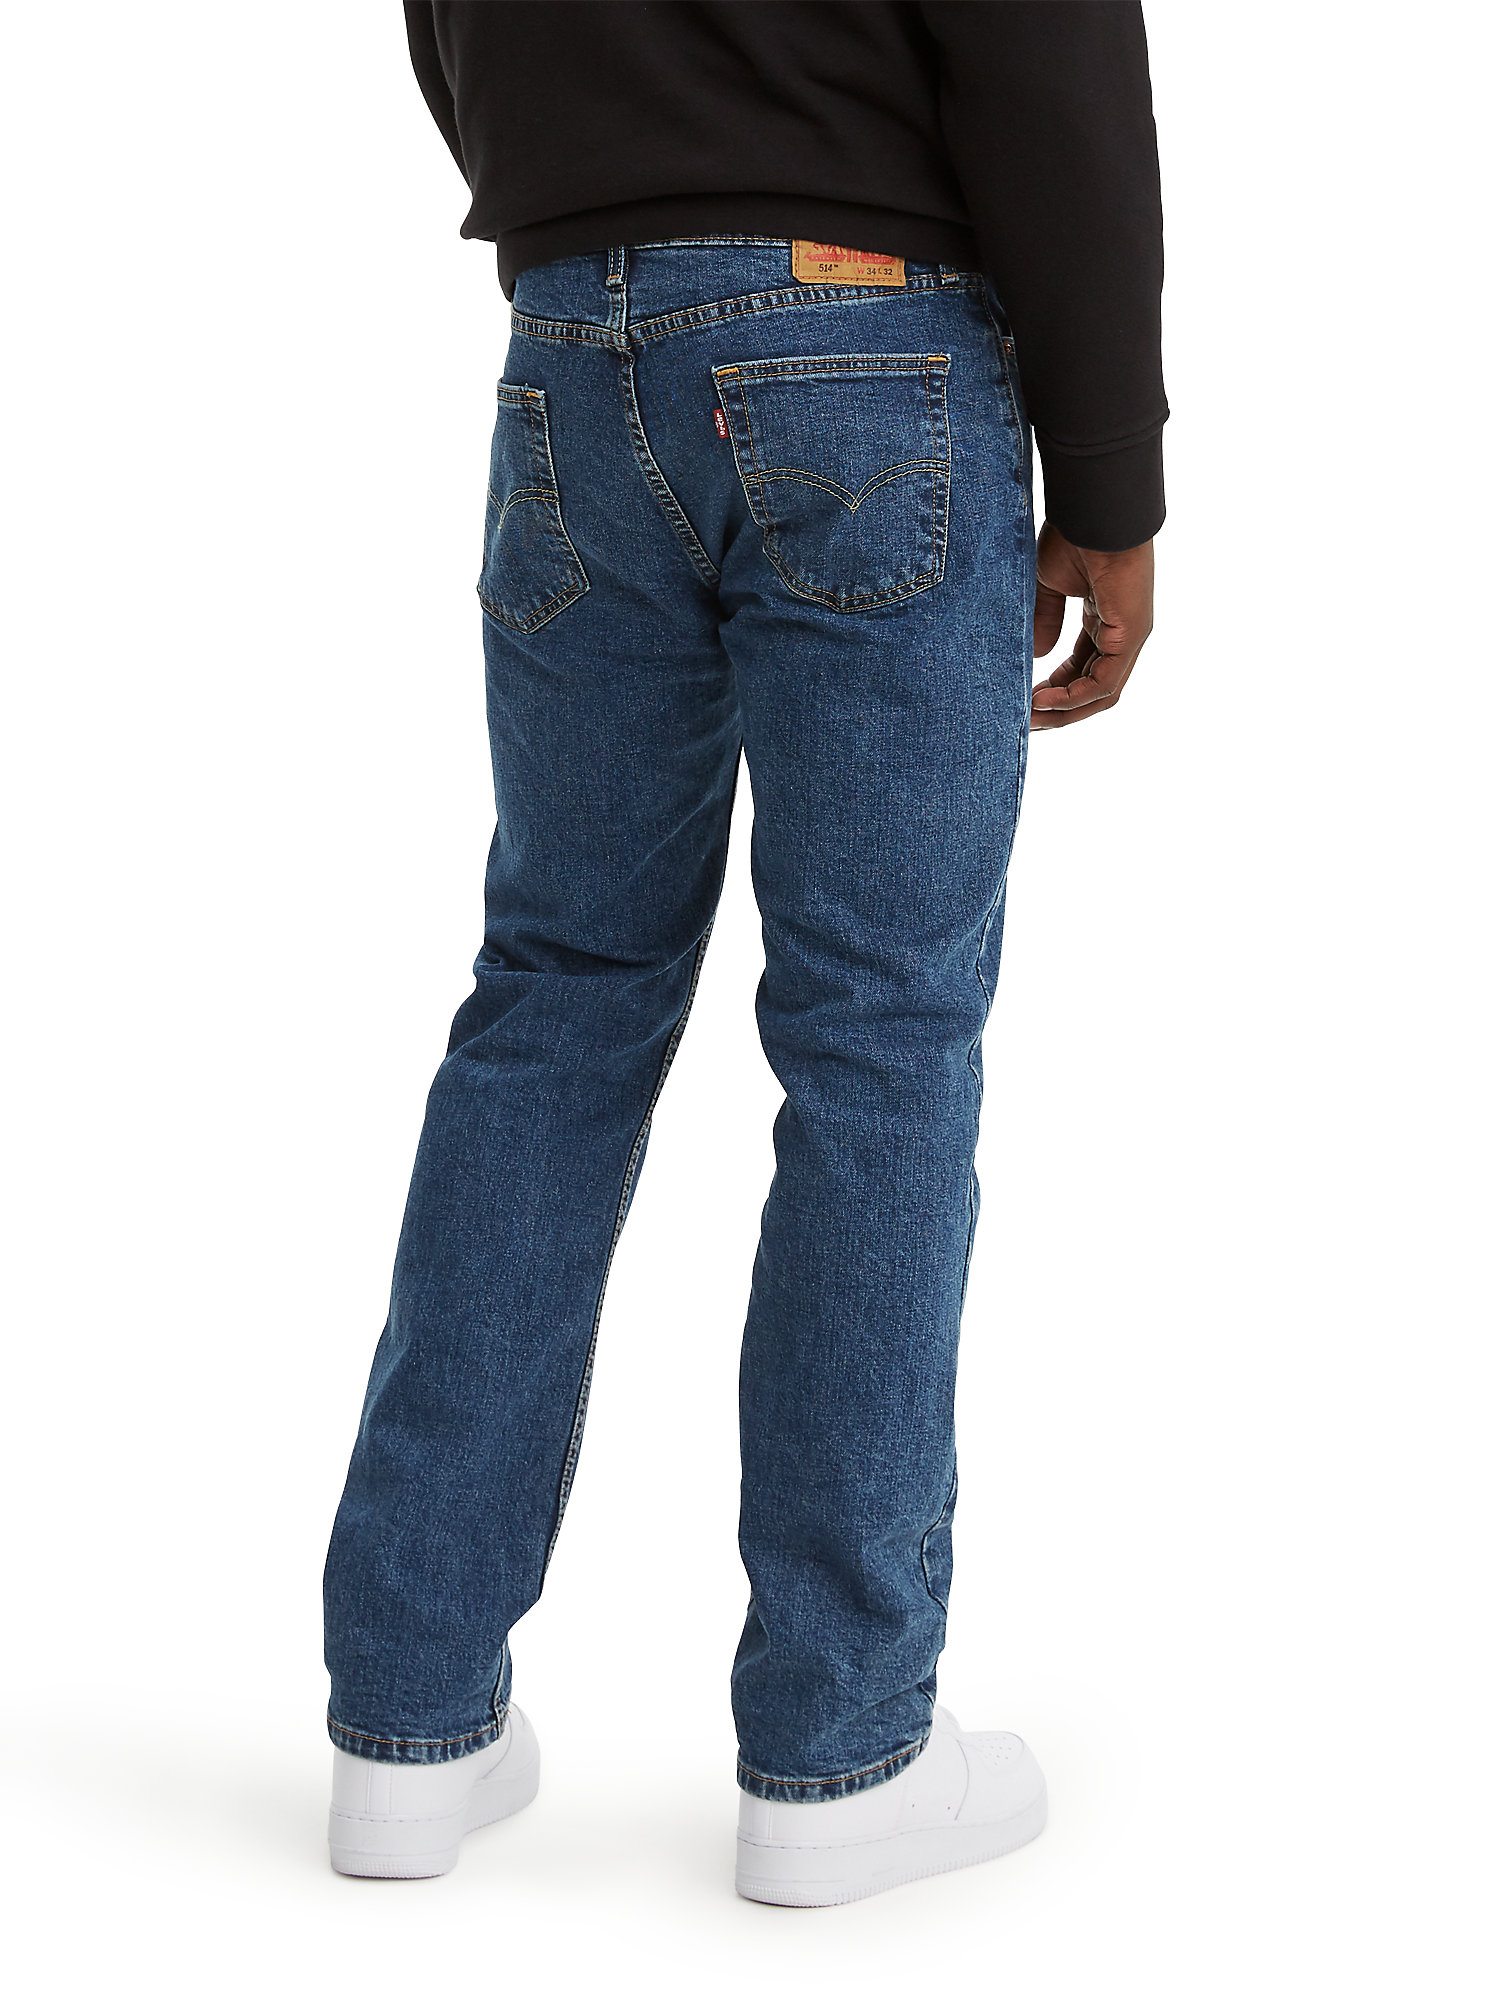 Instalar en pc circuito Oculto Levi's Men's 514 Straight Fit Jeans - Walmart.com